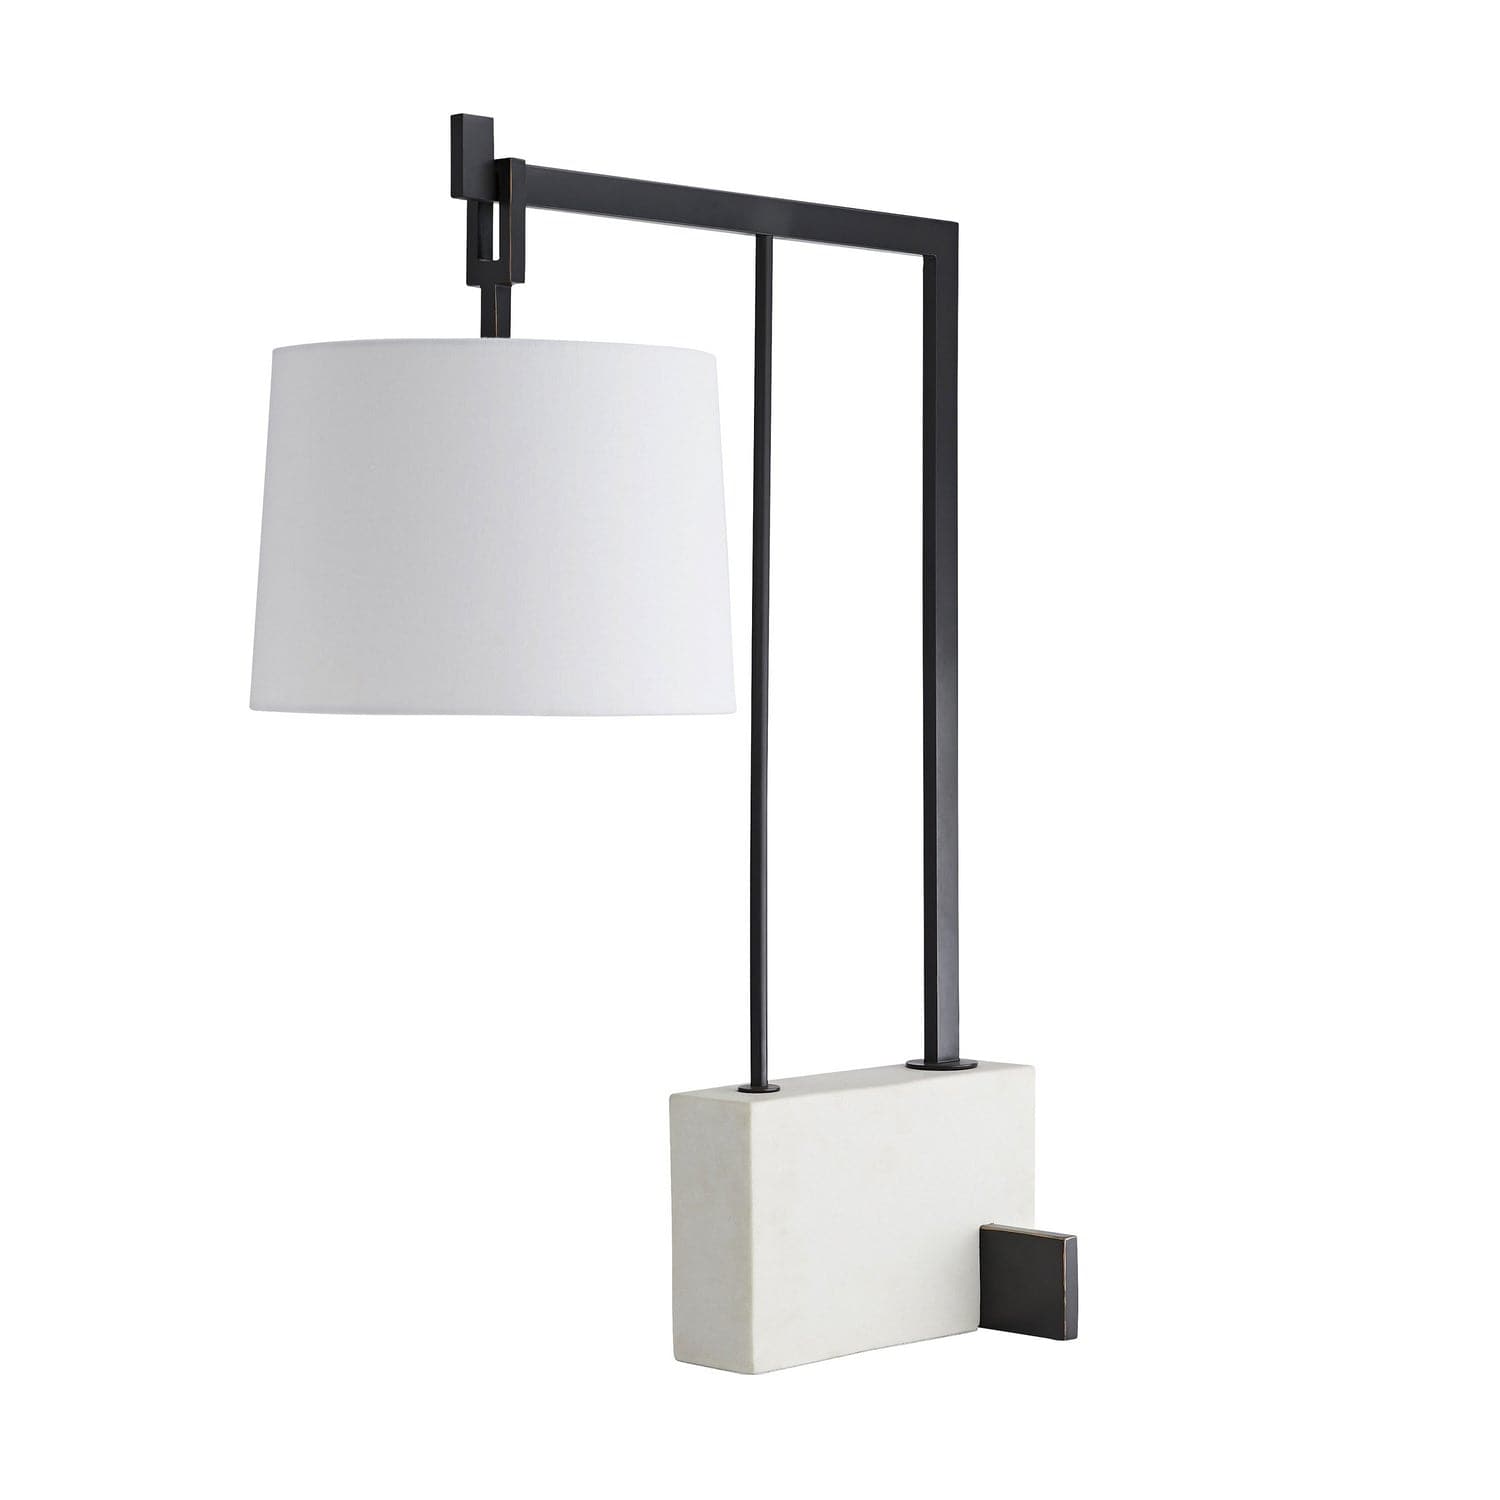 Arteriors - DB49000 - One Light Table Lamp - Piloti - Faux Marble